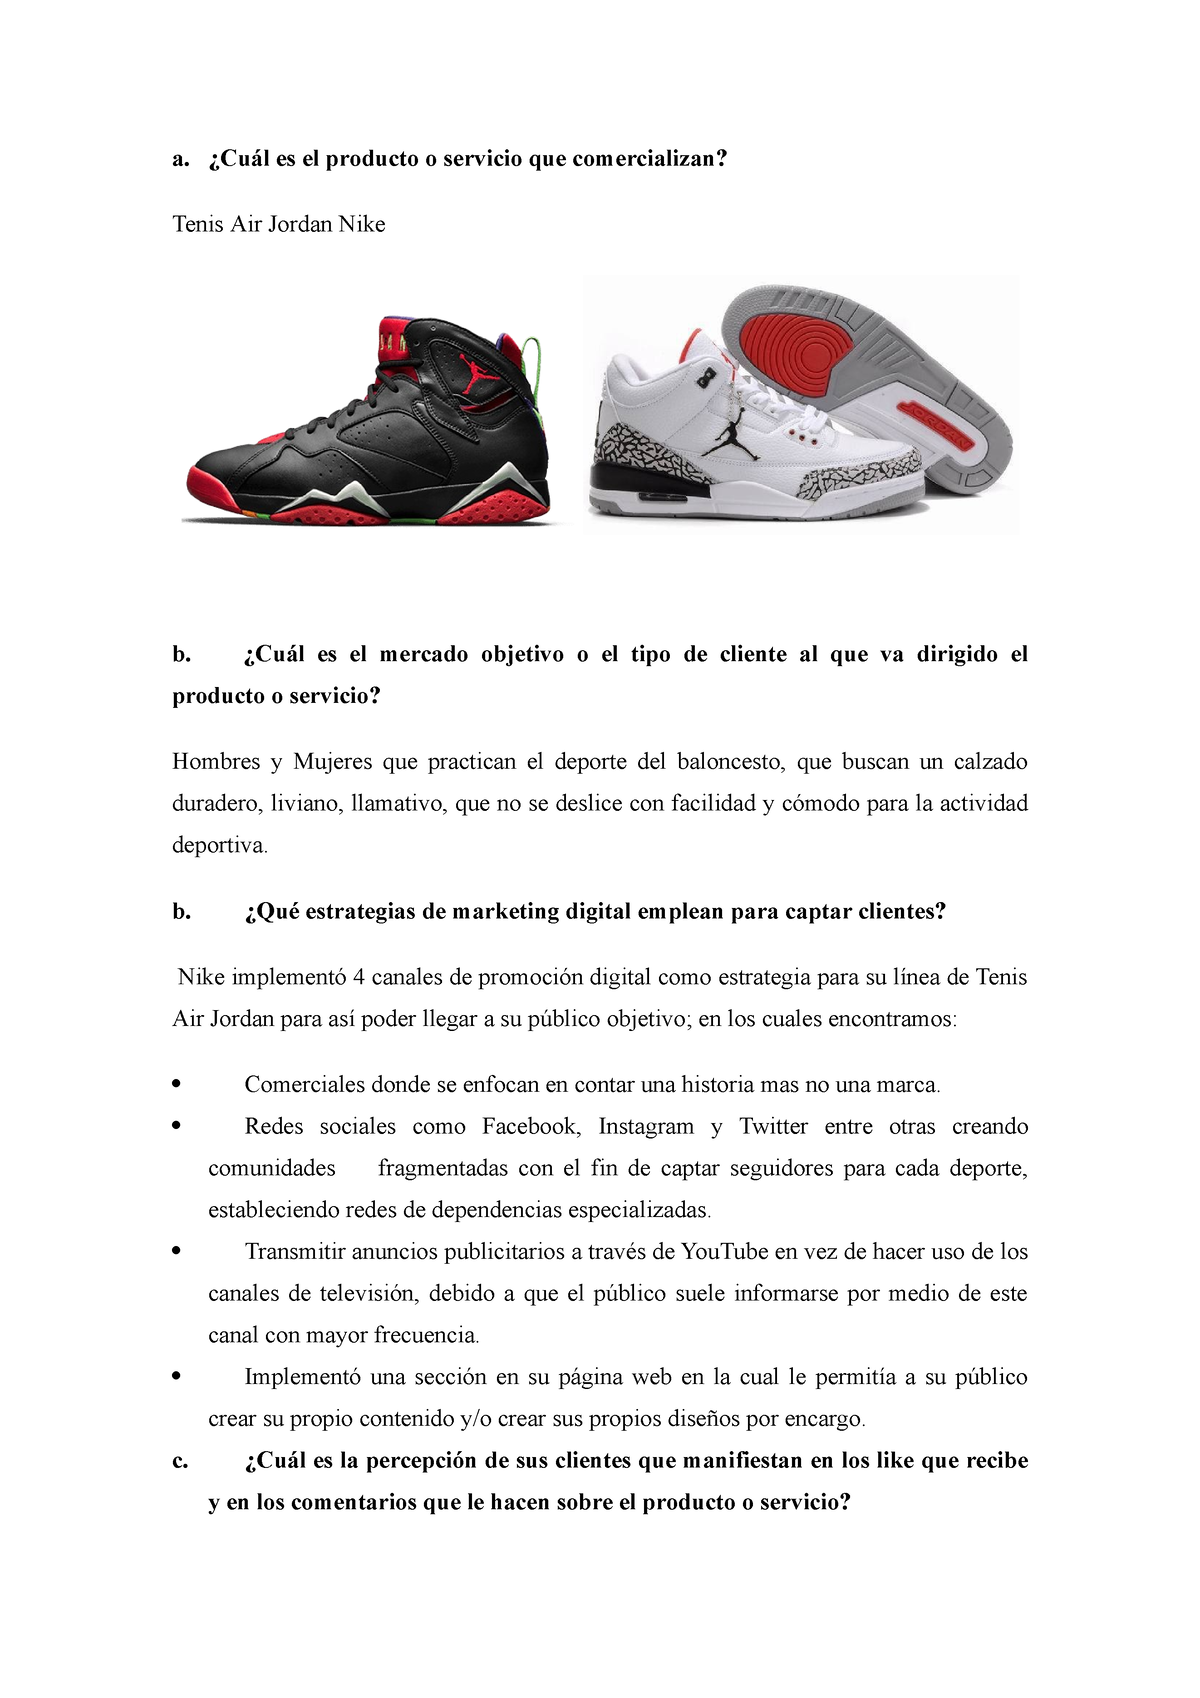 Grupo Salón Negrita 436113850-Analisis-Nike - a. ¿Cuál es el producto o servicio que  comercializan? Tenis Air Jordan - Studocu